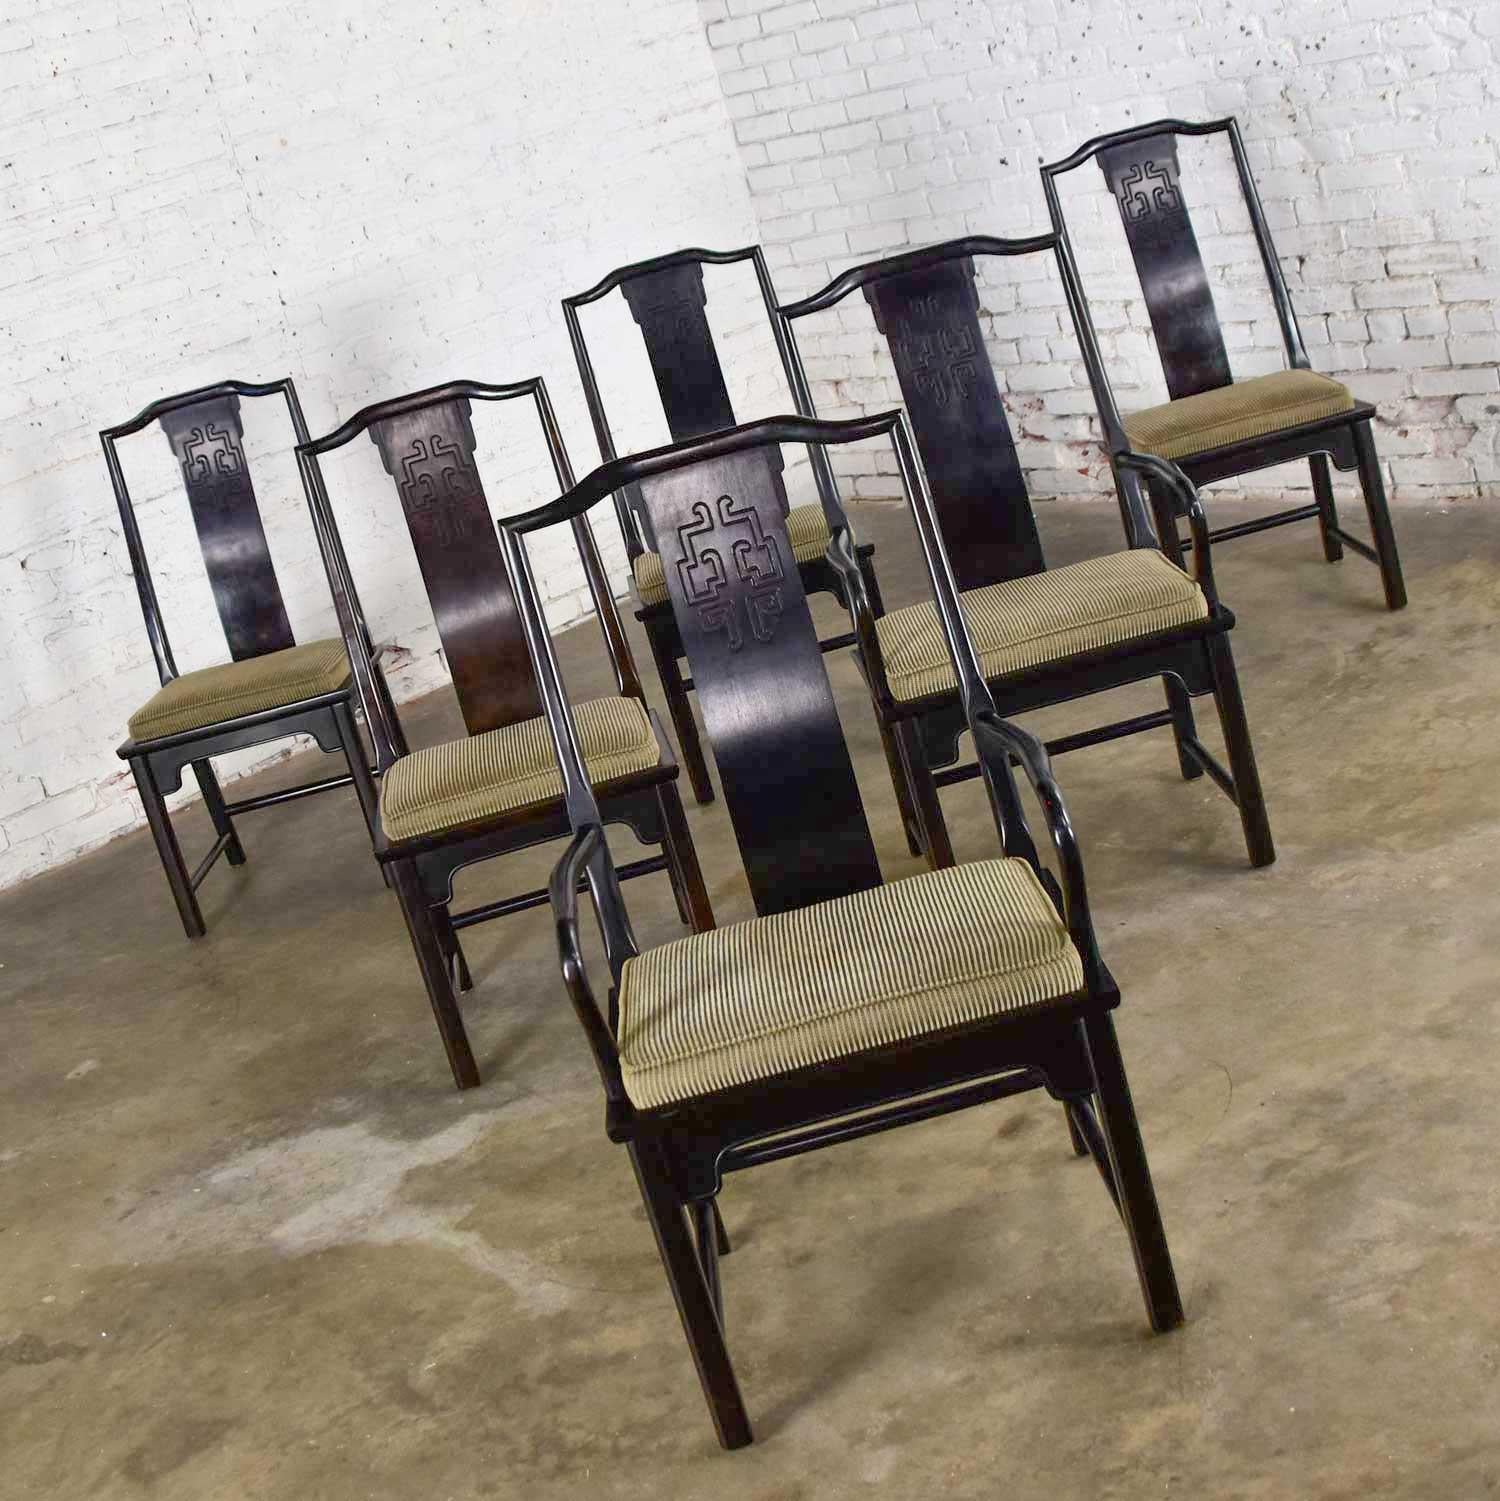 Magnifique ensemble de six chaises de salle à manger Chin Hua, 4 chaises latérales et 2 fauteuils par Raymond K. Sobota pour Century Furniture. Composé de bois de frêne ébonisé brun foncé et d'un tissu texturé à rayures taupe et noir sur les